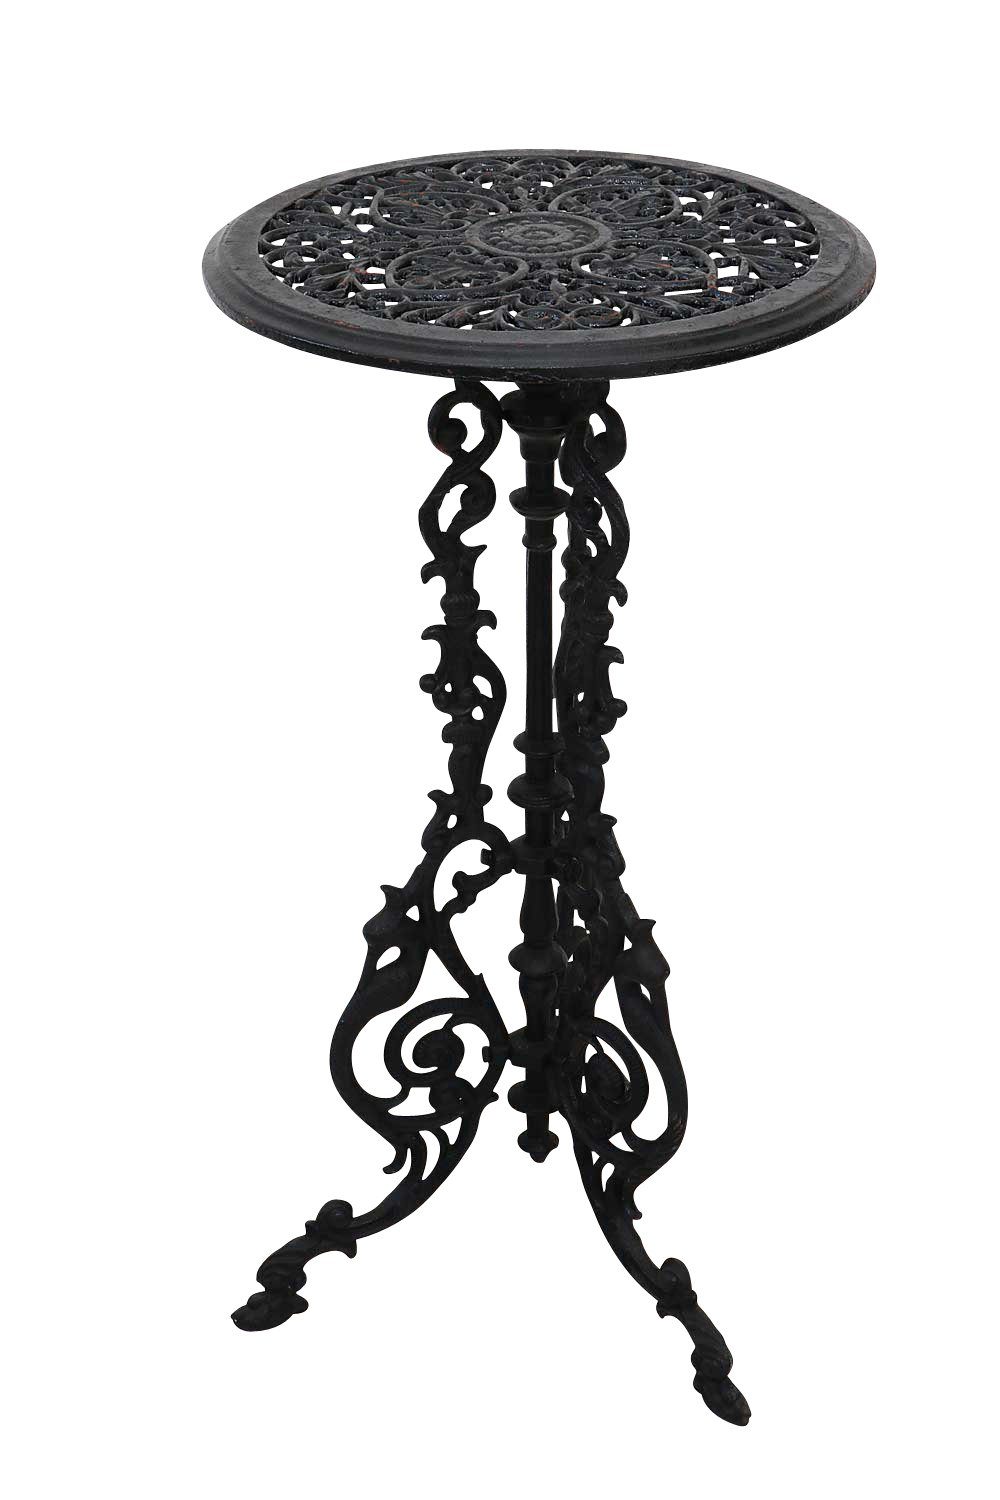 Aubaho Gartentisch Gartentisch Gusseisen 72cm Tisch Beistelltisch Eisen  Antik-Stil schwarz massiv